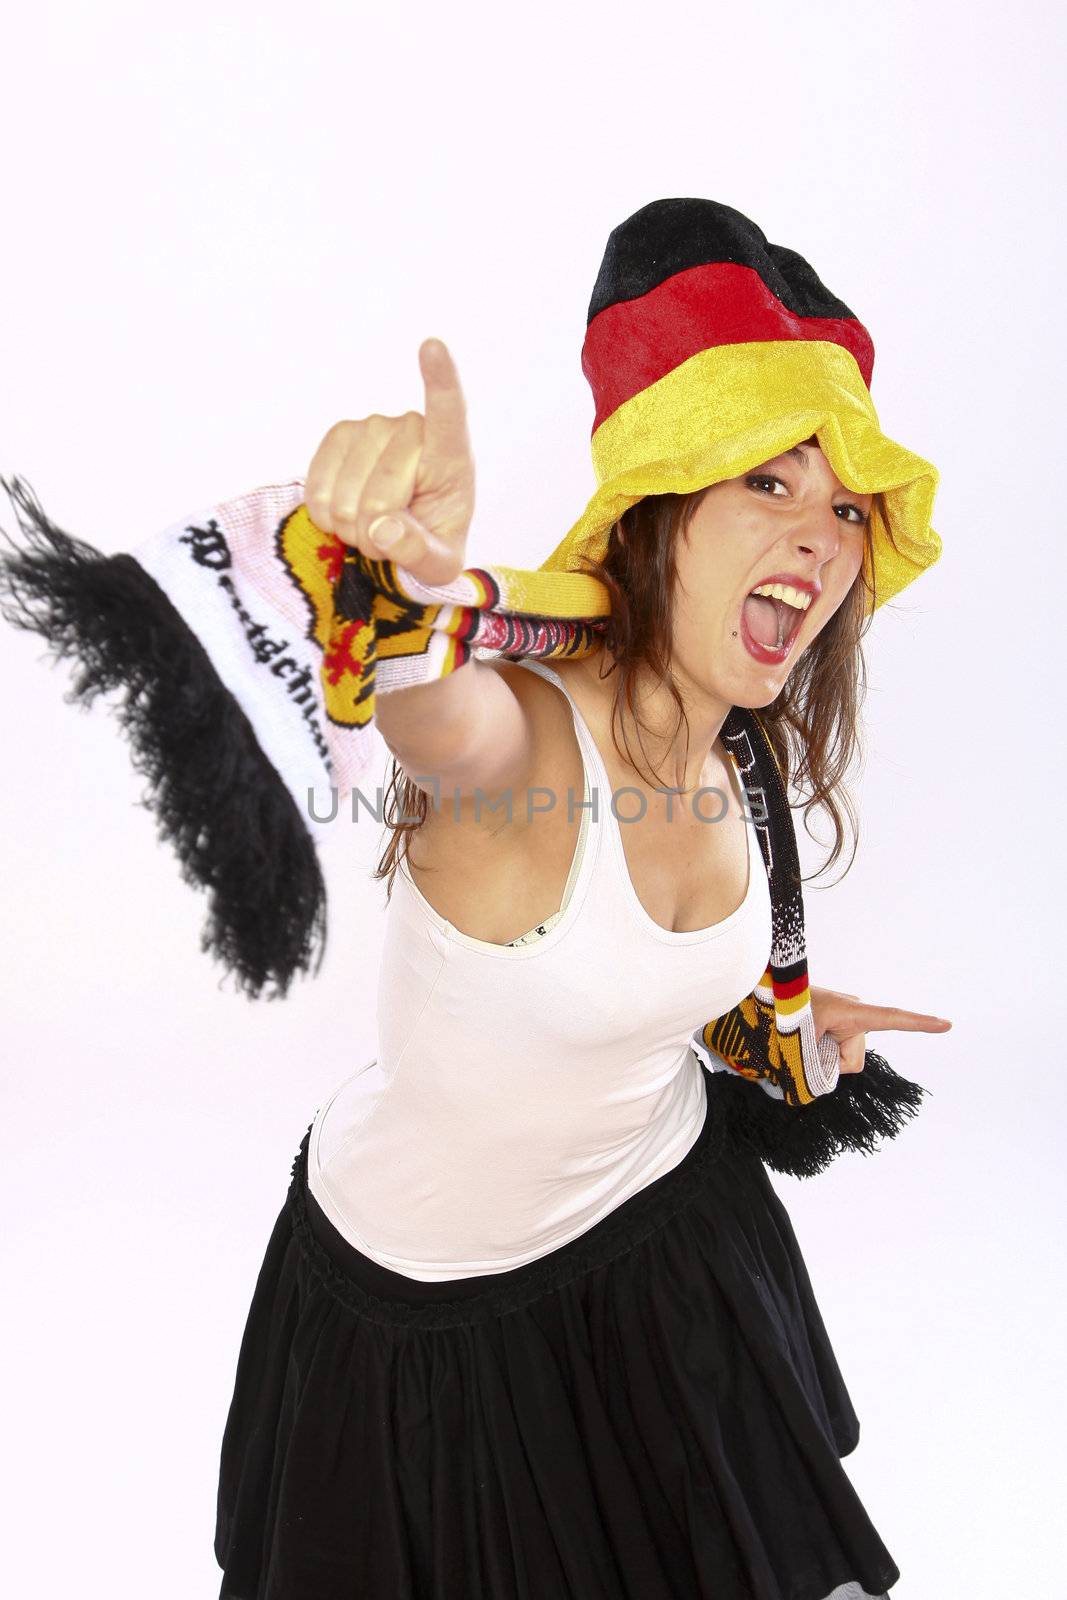 Cheerful German Soccer Fan Girl by nfx702